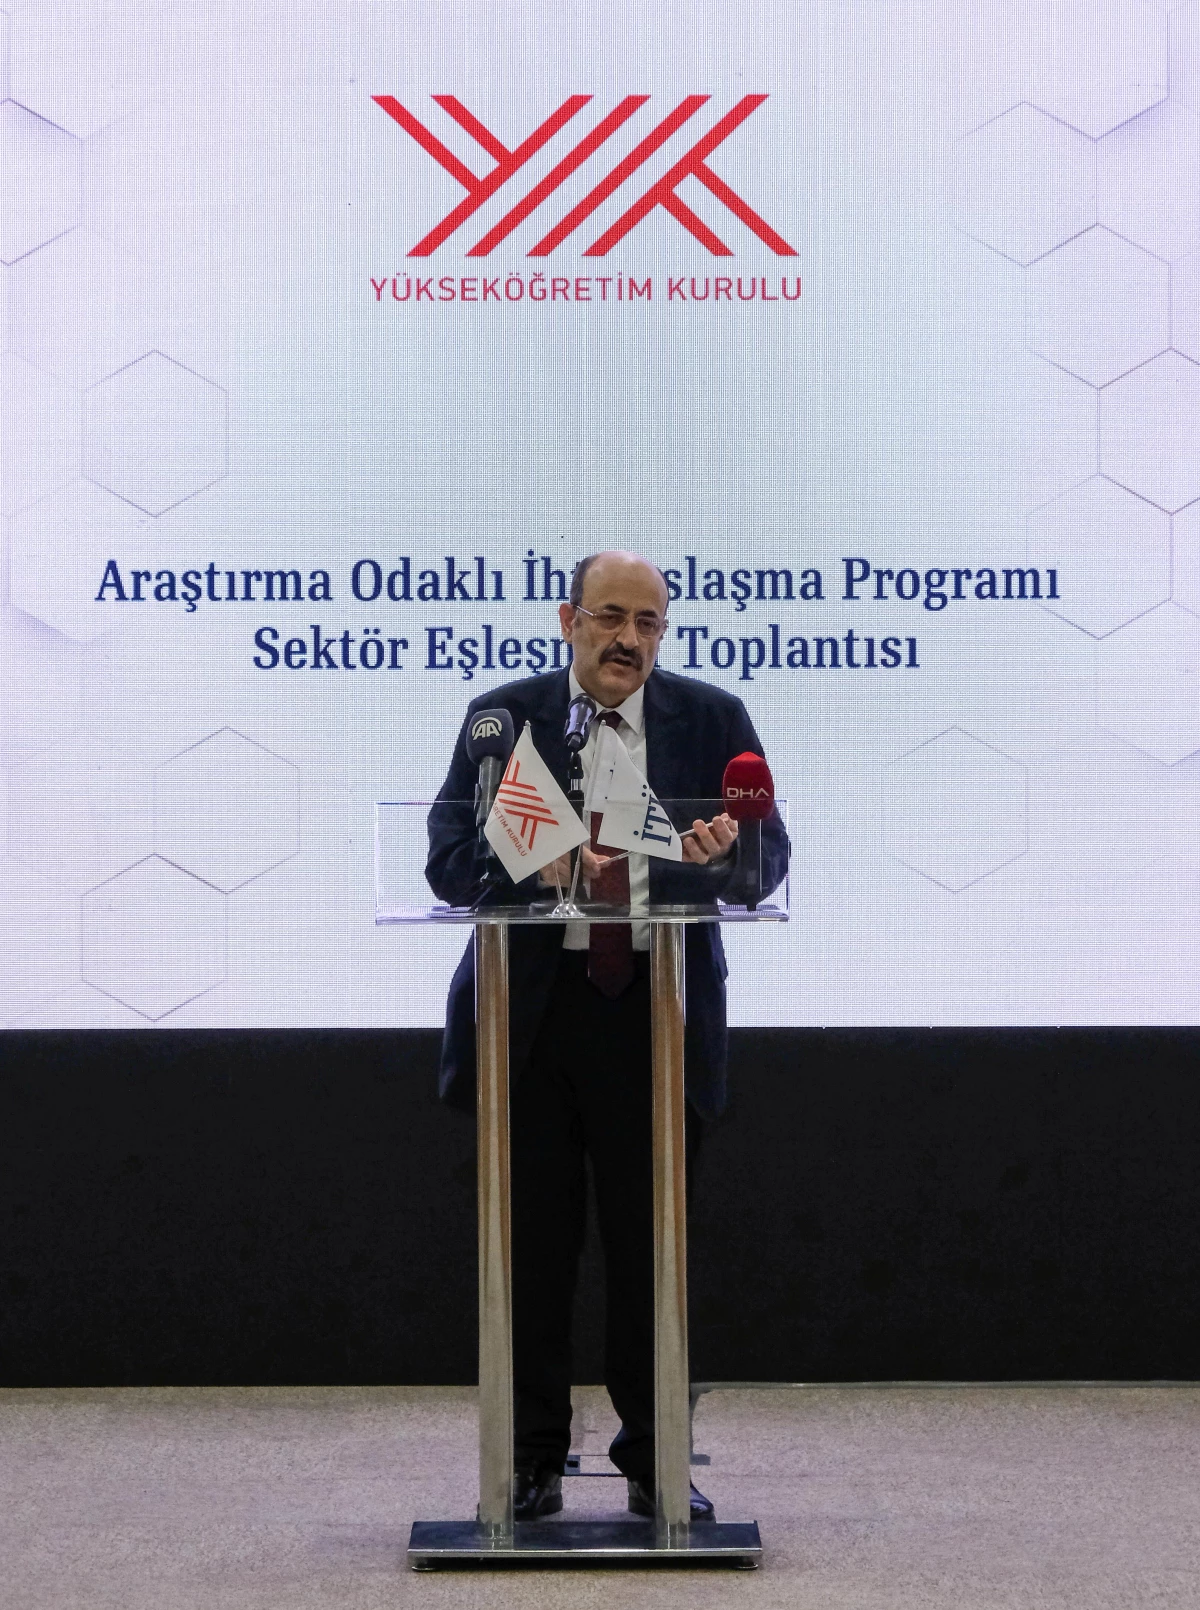 YÖK Başkanı Saraç, "Araştırma Odaklı İhtisaslaşma Programı Sektör Eşleşmesi Toplantısı"nda konuştu